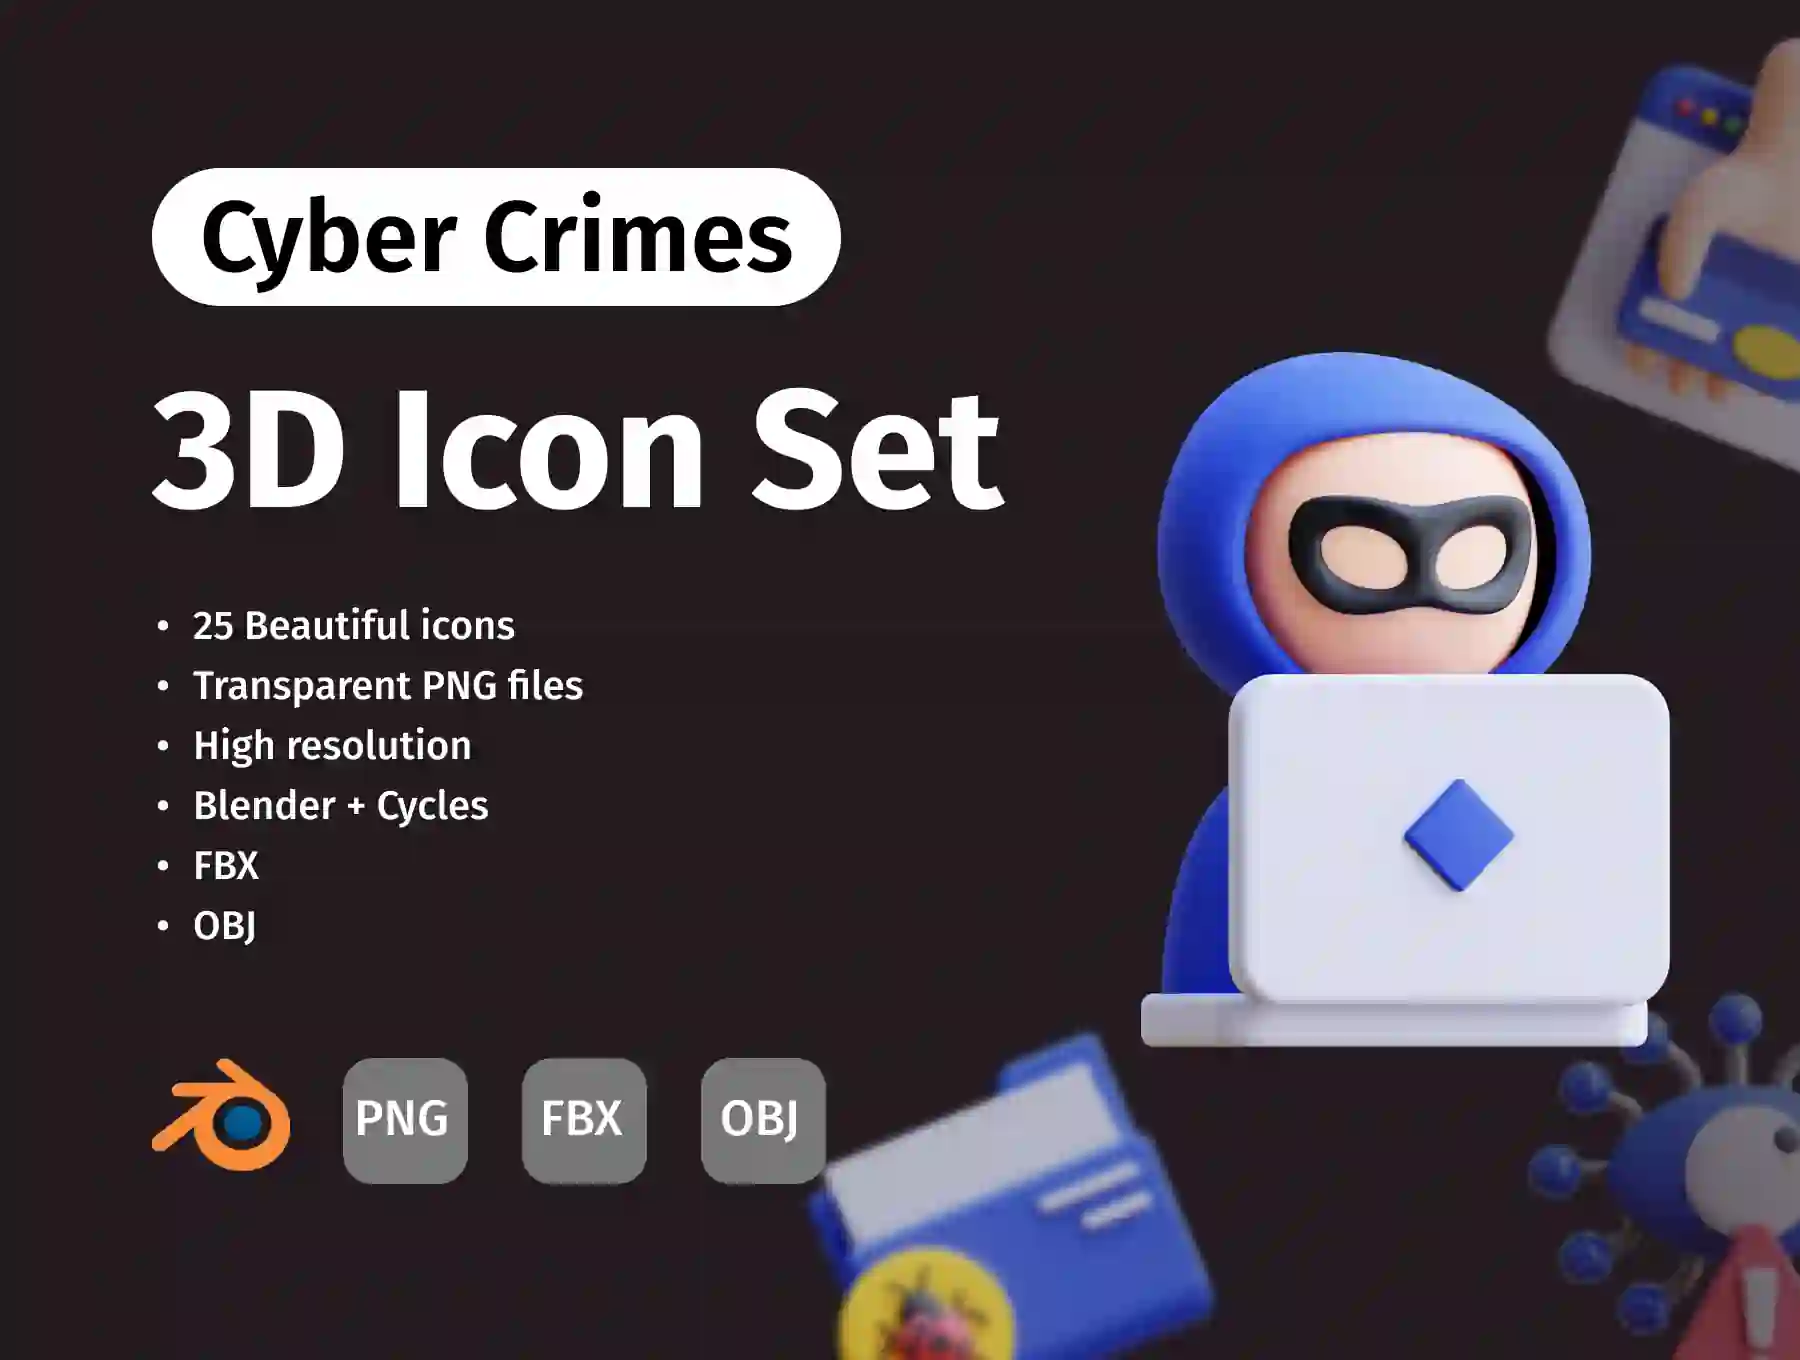 3D Cyber Crimes